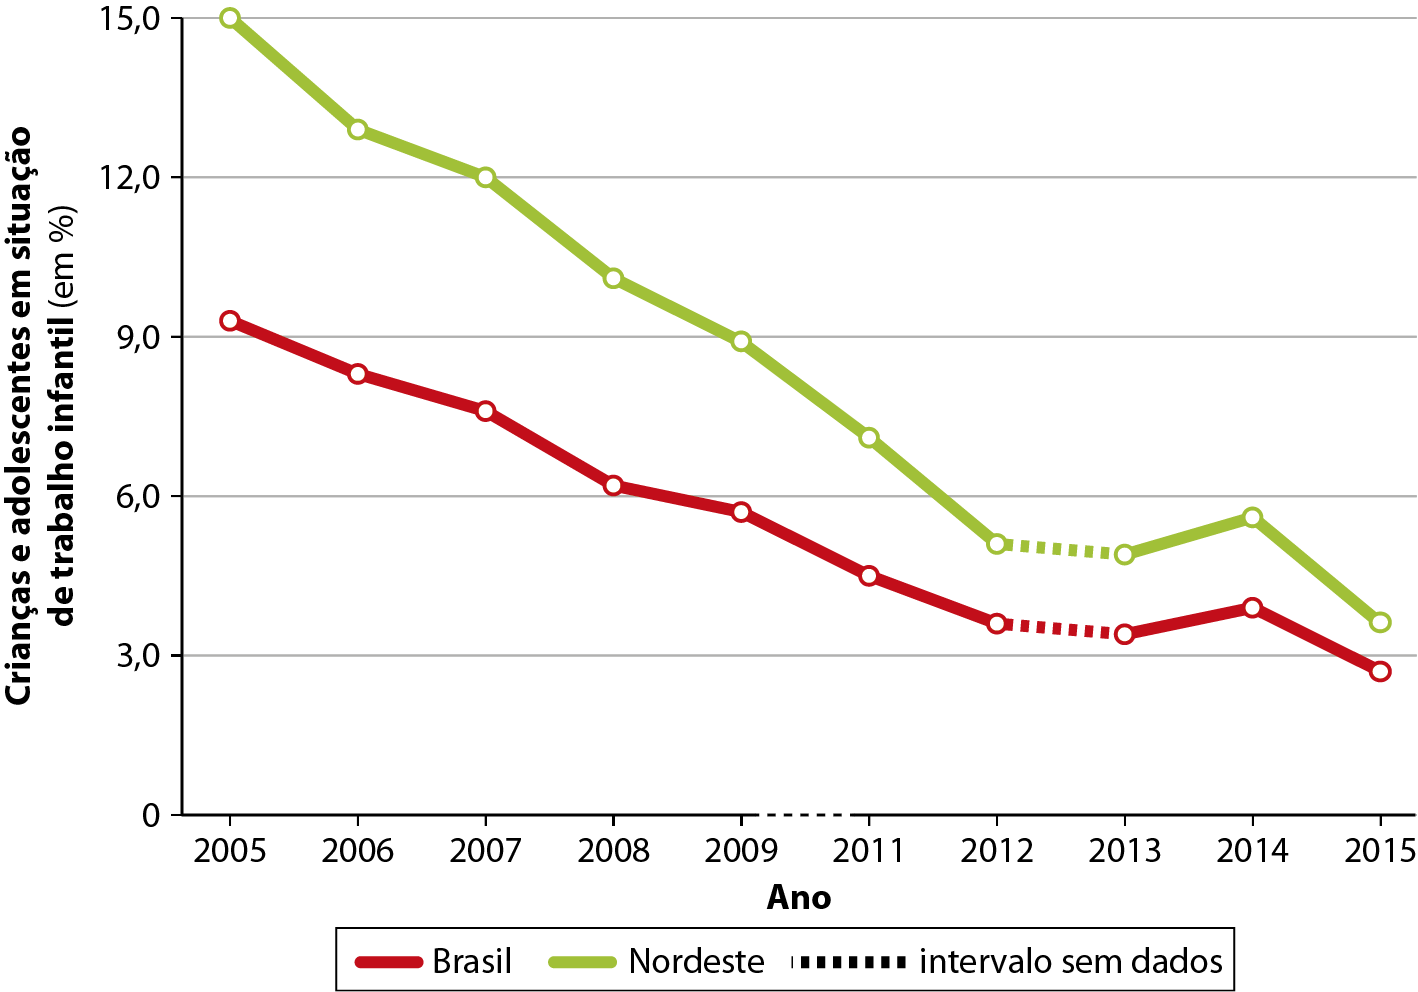 Gráfico. Brasil e região Nordeste: crianças e adolescentes entre 10 e 13 anos em situação de trabalho infantil (2005 a 2015). Gráfico de linhas. No eixo vertical, valores de porcentagem de crianças e adolescentes em situação de trabalho infantil; no eixo horizontal, os anos de 2005 a 2015. Brasil, representado por linha vermelha: 2005: 9,1 por cento de crianças e adolescentes em situação de trabalho infantil. 2006: 8,5 por cento. 2007: 7,5 por cento. 2008: 6 por cento. 2009: 5,8 por cento. 2011: 4,5 por cento. 2012: 3,5 por cento. 2013: 3,2 por cento. 2014: 3,7 por cento. 2015: 2,9 por cento. Nordeste, representado por linha verde: 2005: 15,00 por cento. 2006: 13 por cento. 2007: 12 por cento. 2008: 10 por cento. 2009: 9 por cento. 2011: 7 por cento. 2012: 5 por cento. 2013: 5 por cento. 2014: 5,8 por cento. 2015: 3,8 por cento. Entre 2009 e 2011: intervalo sem dados.